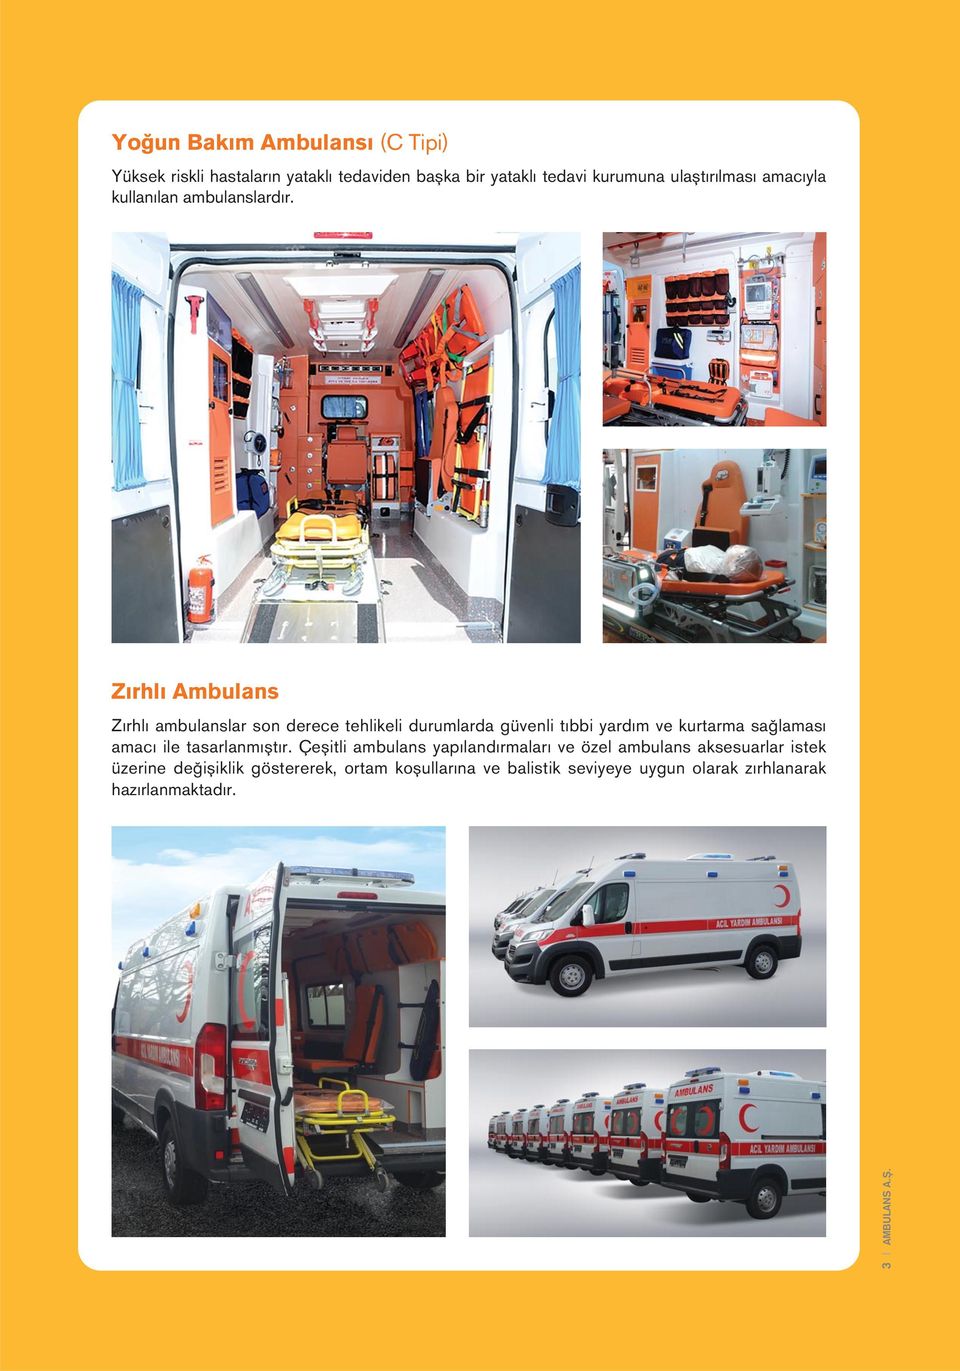 Zırhlı Ambulans Zırhlı ambulanslar son derece tehlikeli durumlarda güvenli tıbbi yardım ve kurtarma sağlaması amacı ile